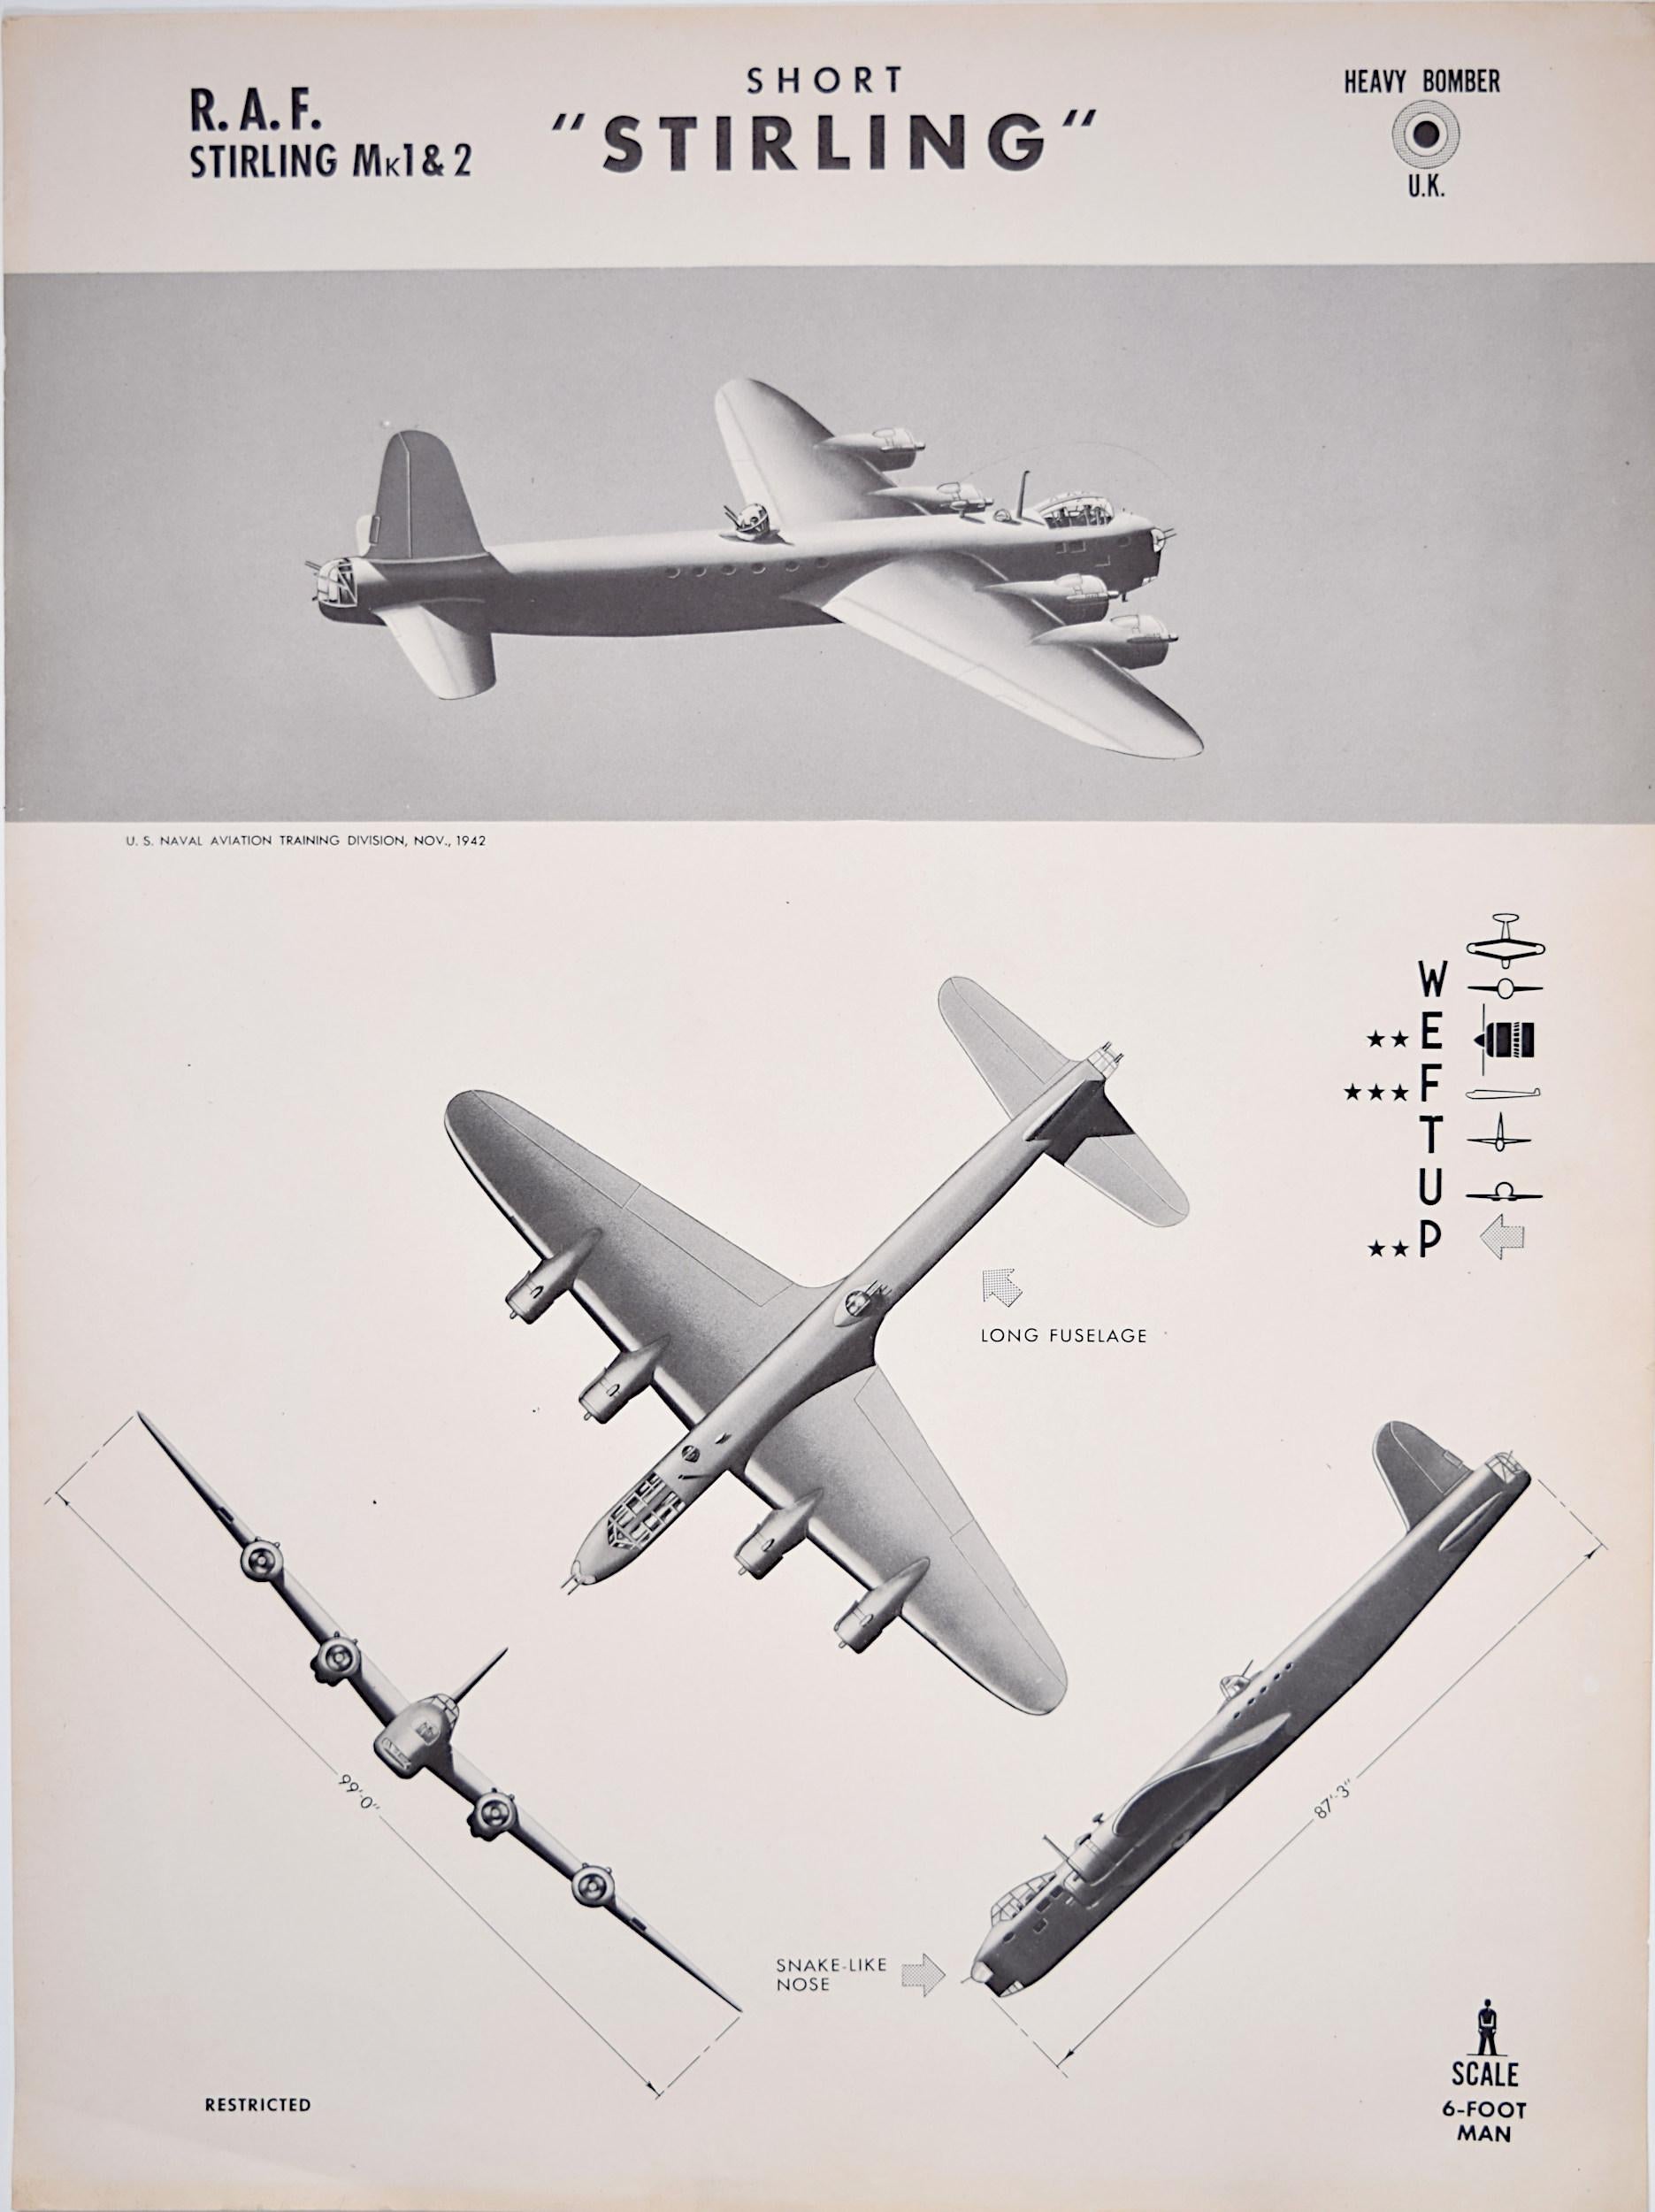 Affiche de reconnaissance d'avions Short Stirling de la Royal Air Force datant de 1943. États-Unis Navy